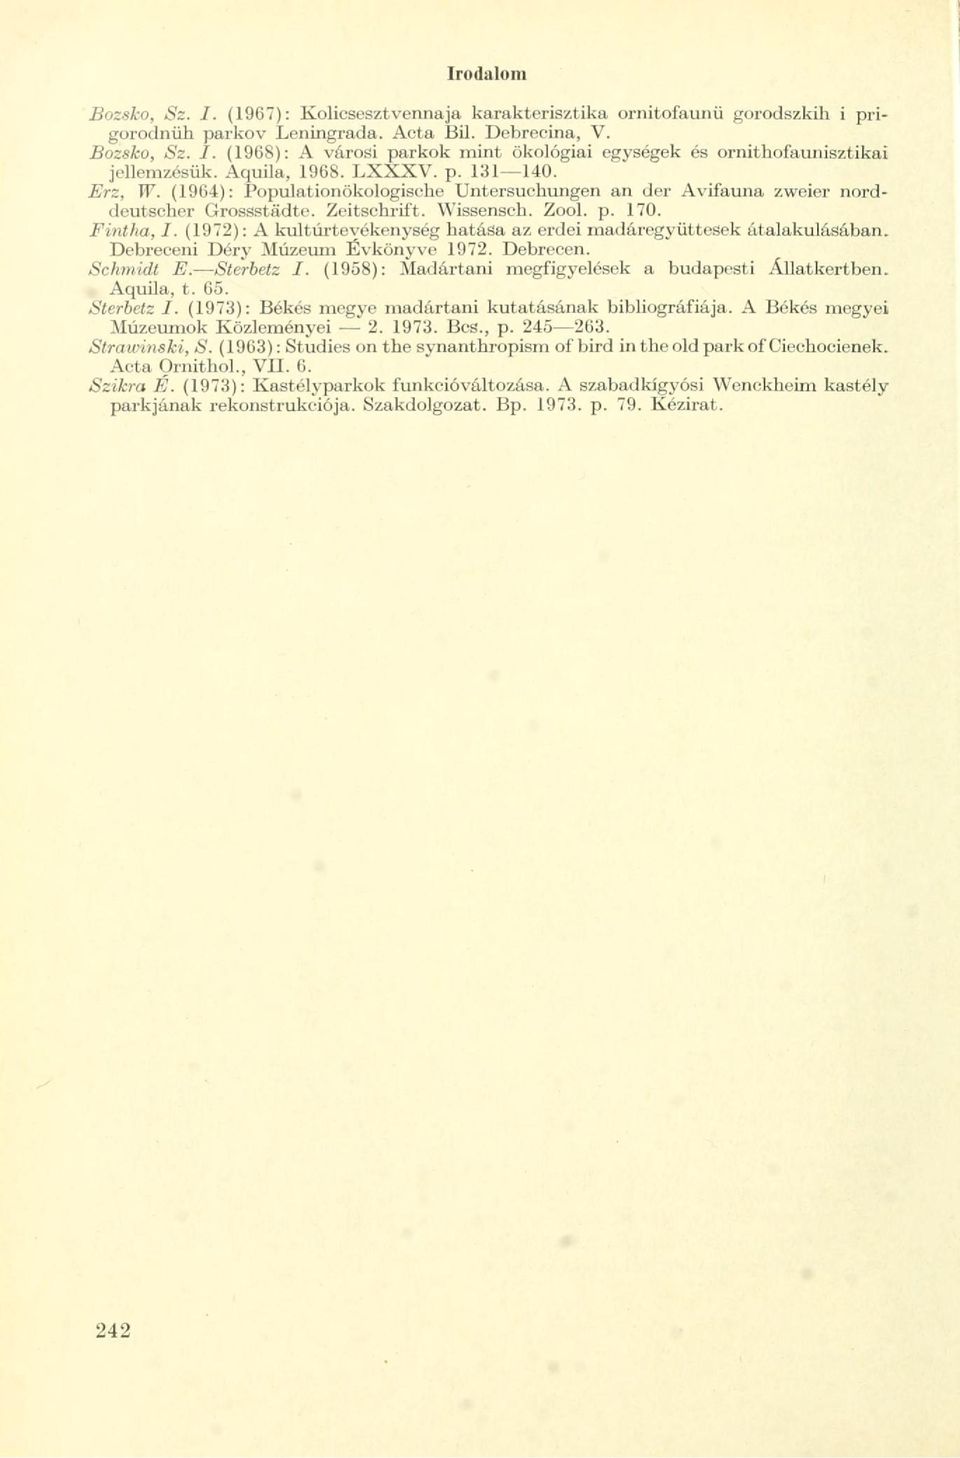 (1972): A kultúrteyékenység hatása az erdei madáregyüttesek átalakulásában. Debreceni Déry Múzeum Évkönyve 1972. Debrecen. Schmidt E. Sterbetz I.